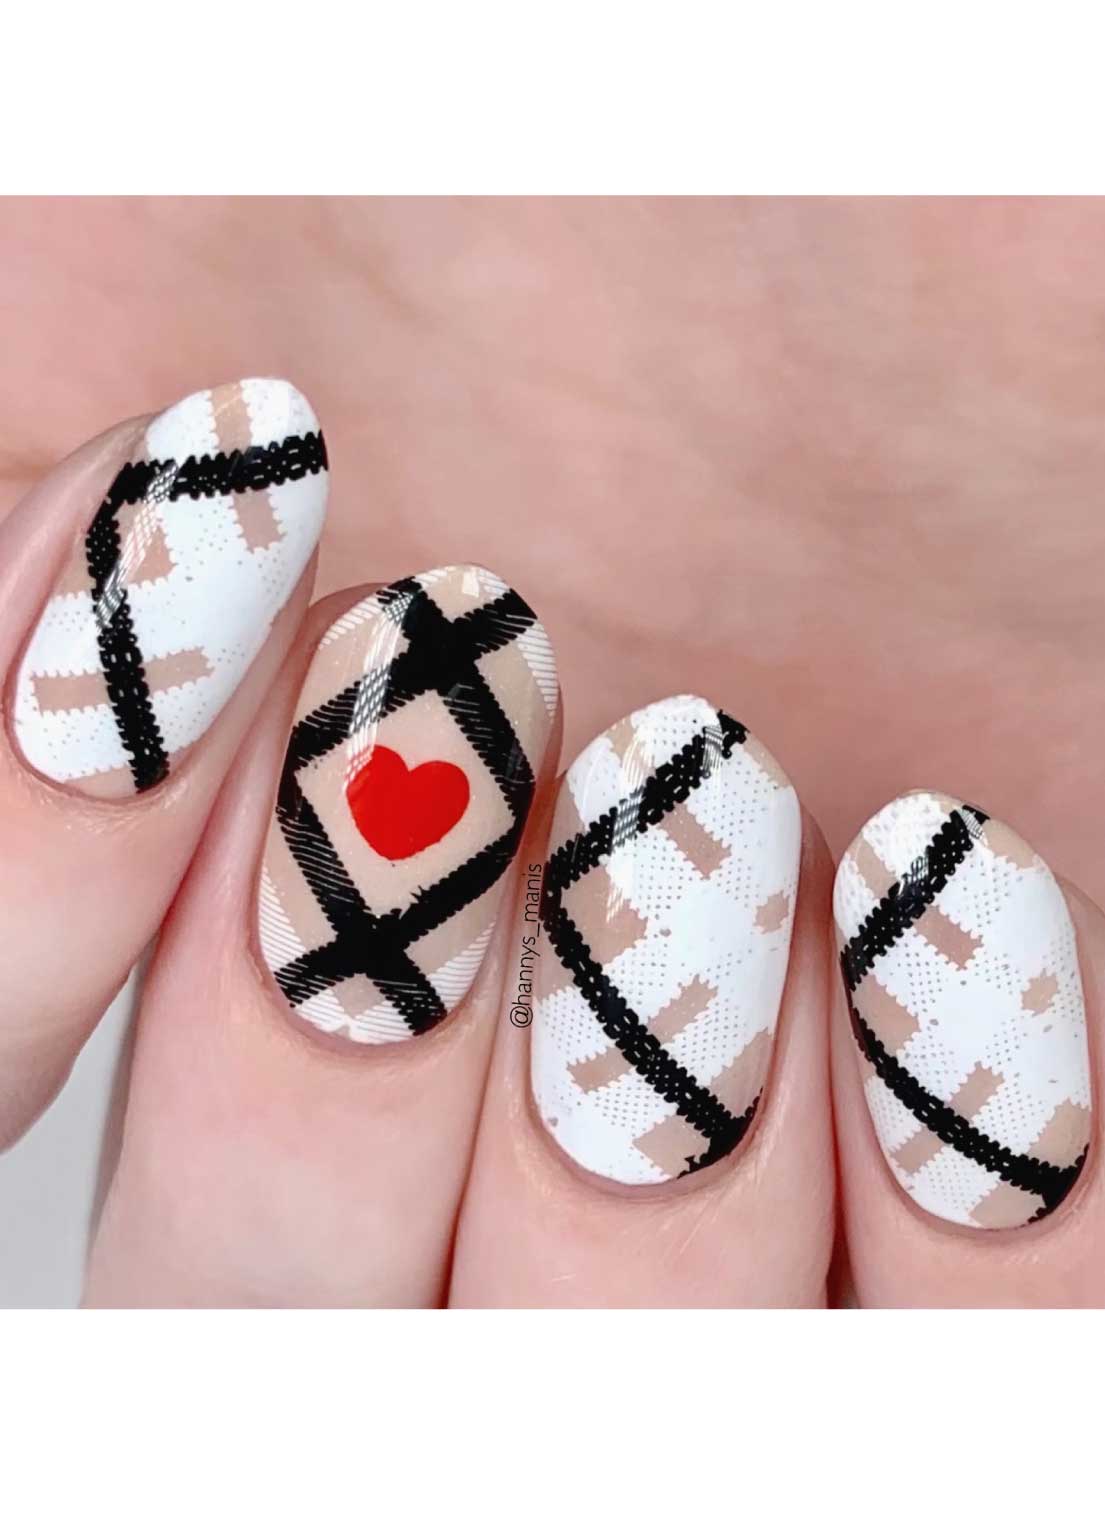 simple plaid nails | Plaid nails, Christmas nails, Plaid nail designs